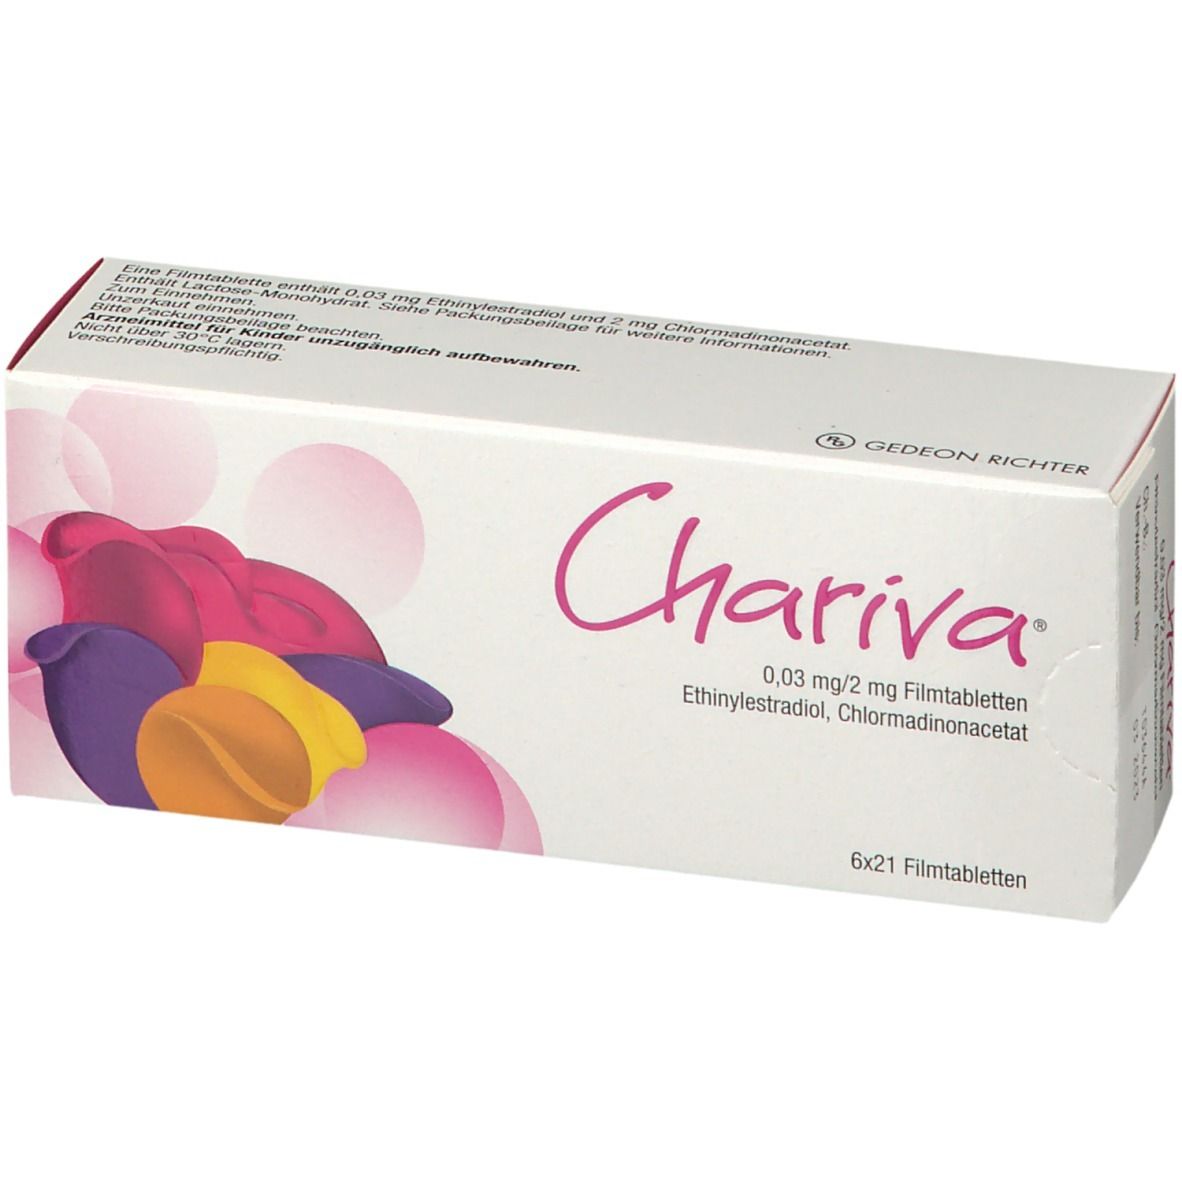 Chariva® 0,03 mg/2 mg